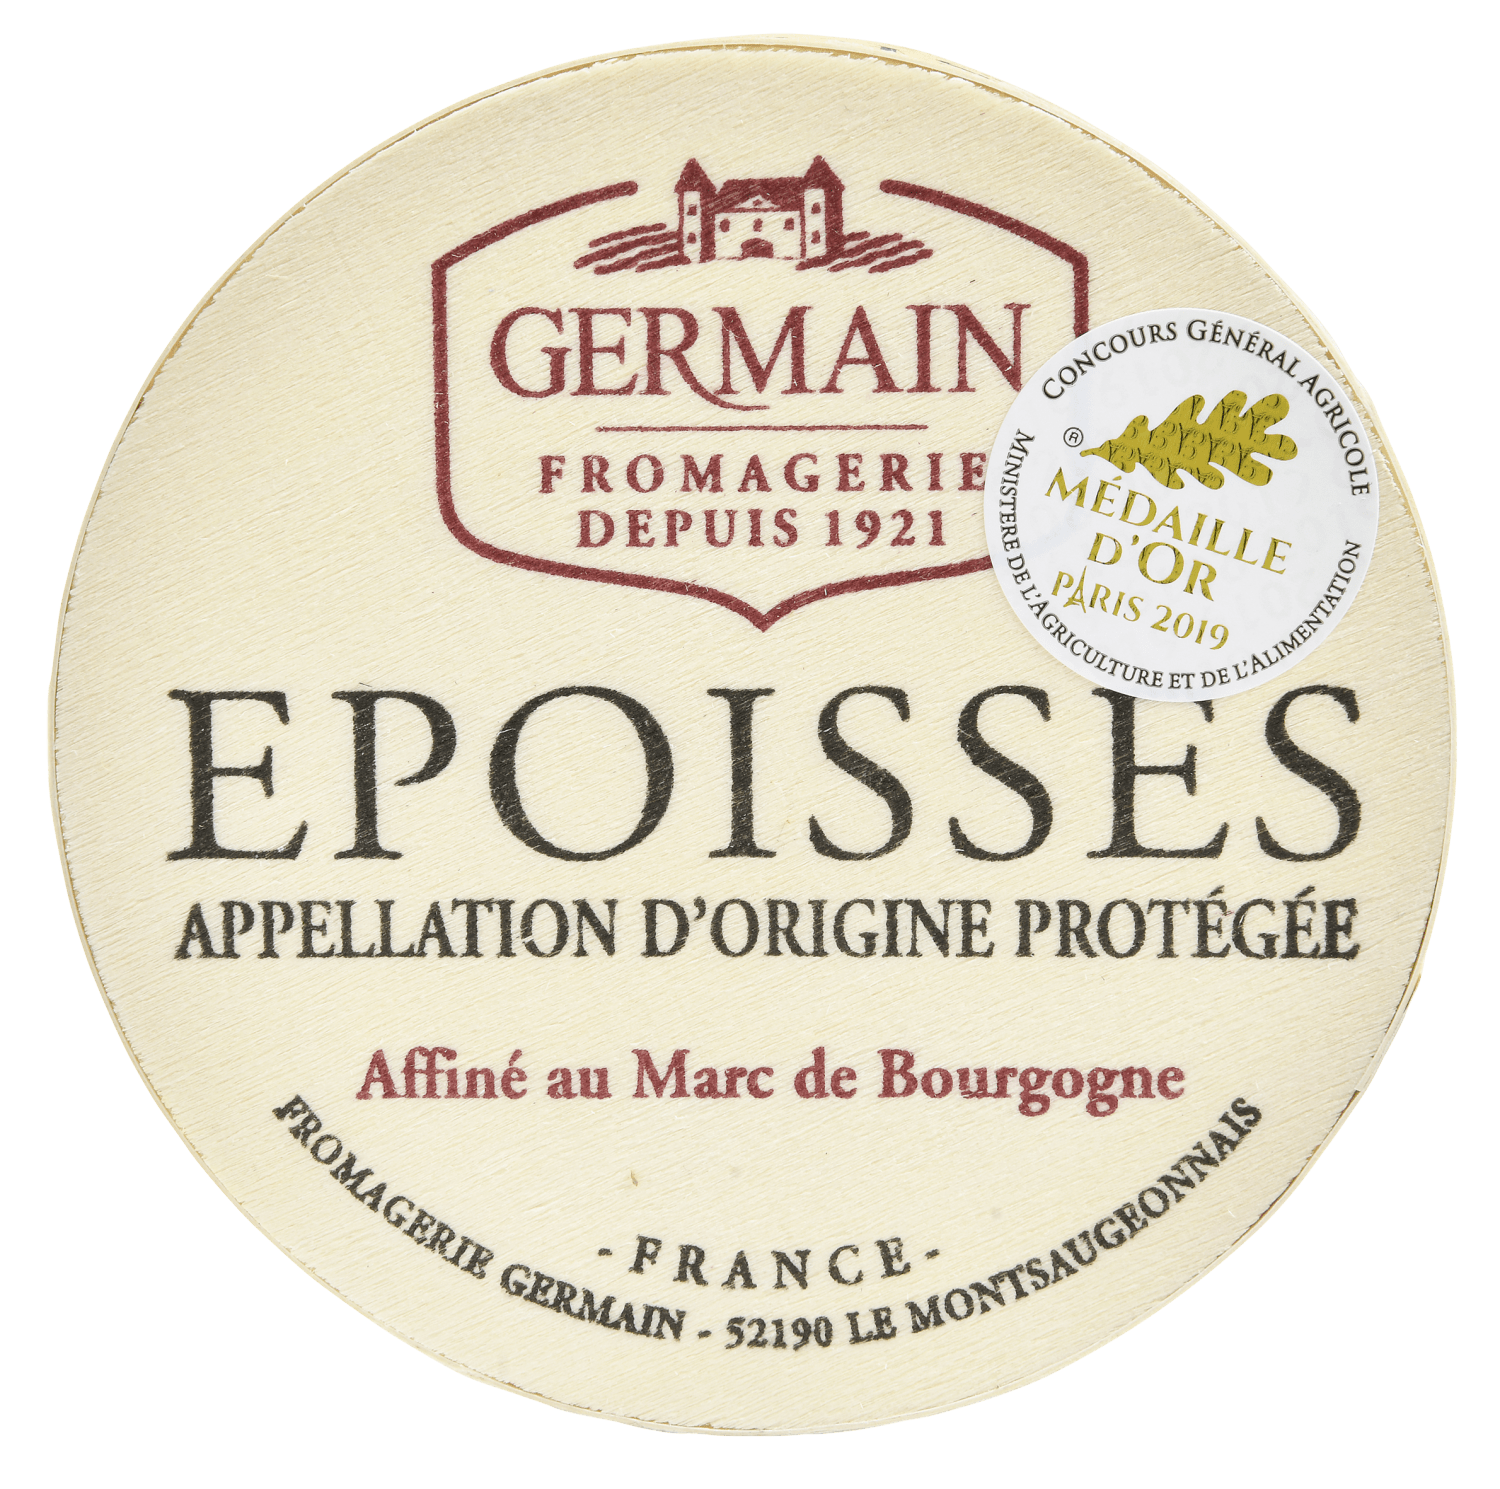 Epoisses de Bourgogne AOP 250 g